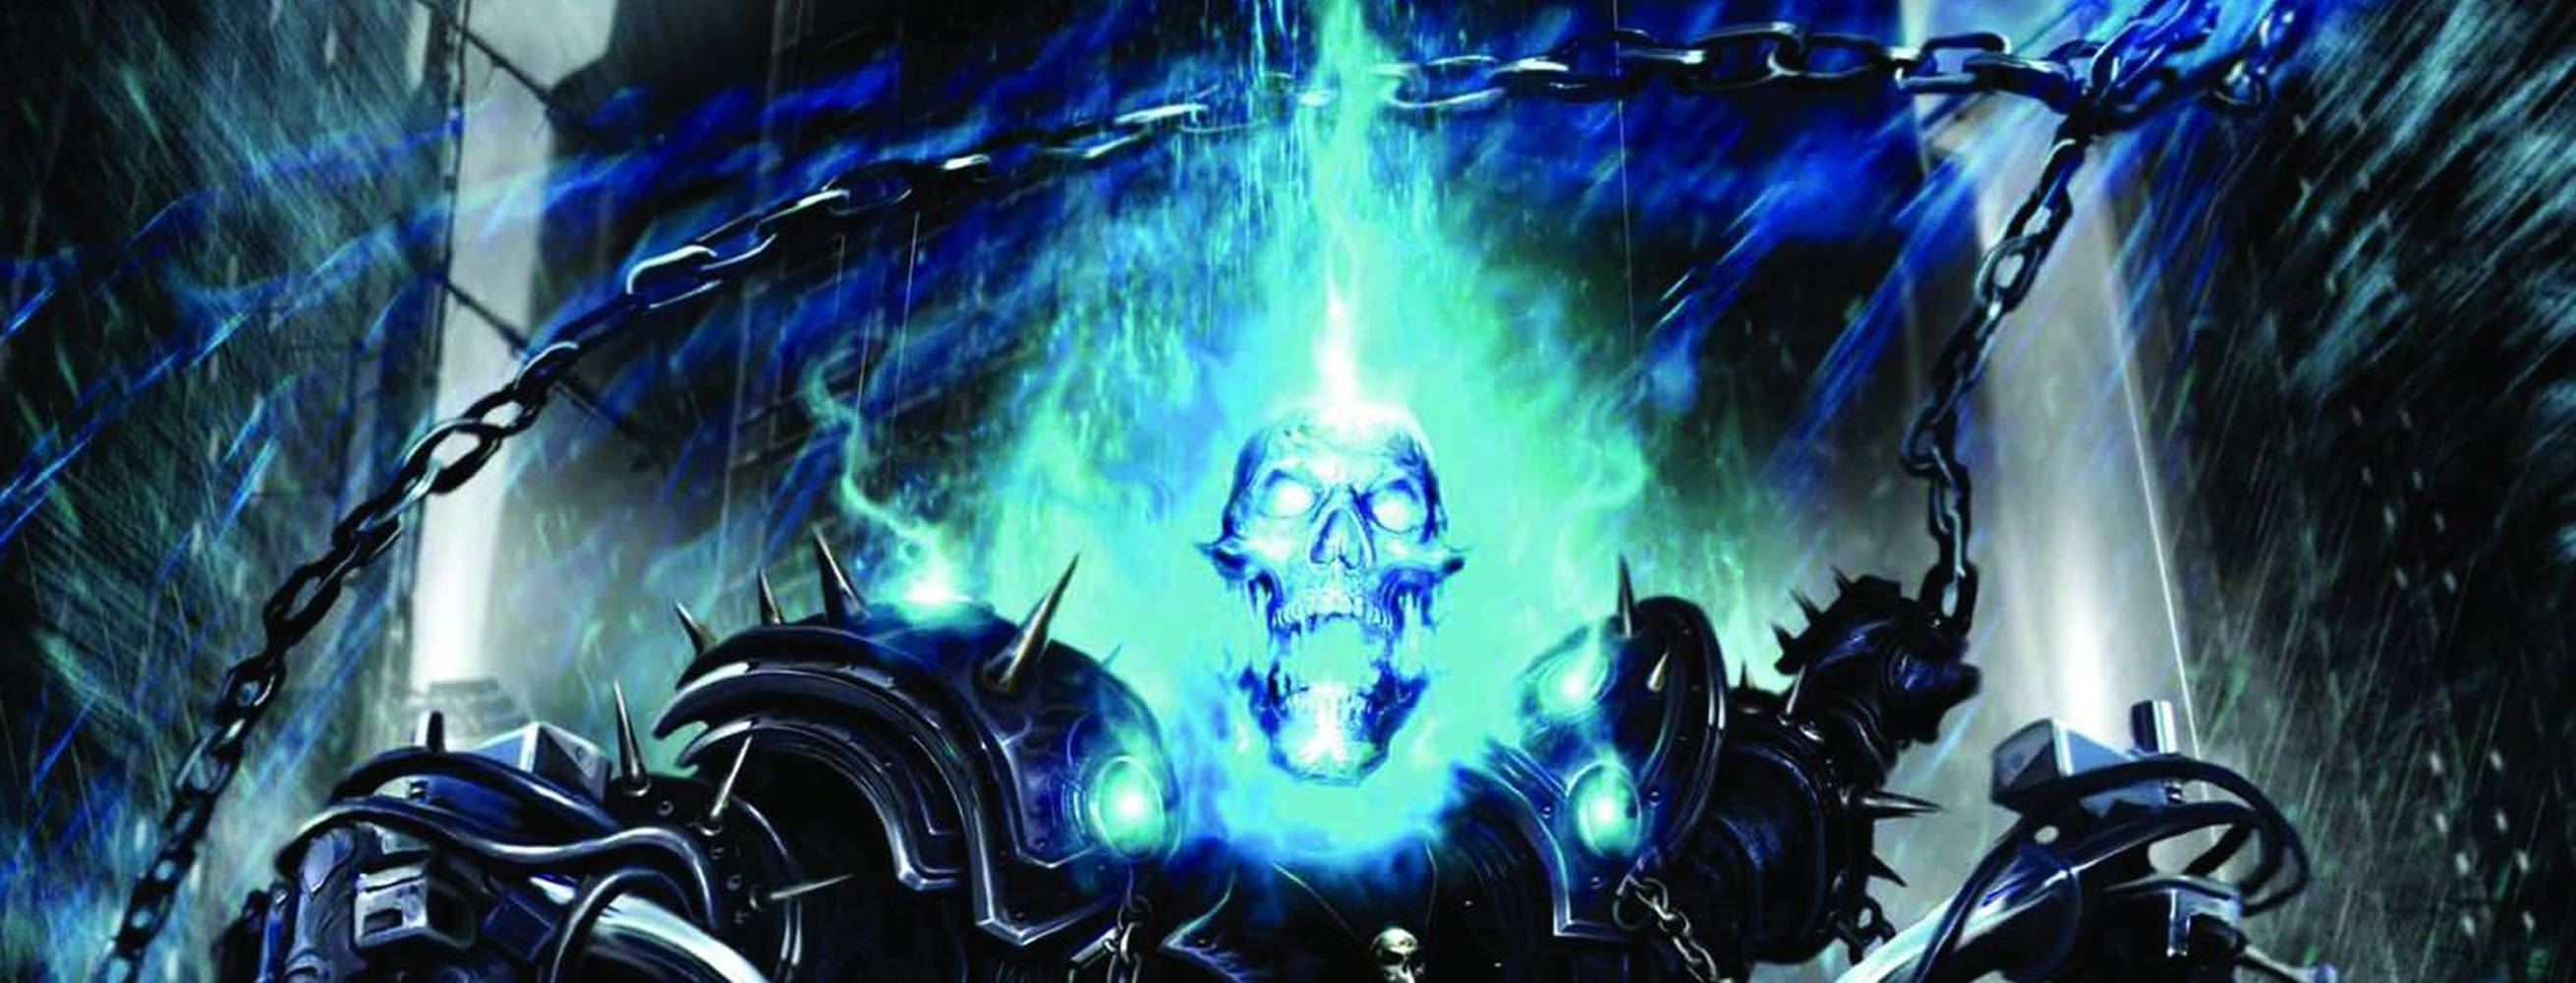 Blue Assault - Blue Ghost Rider Marvel Madness Wallpaper